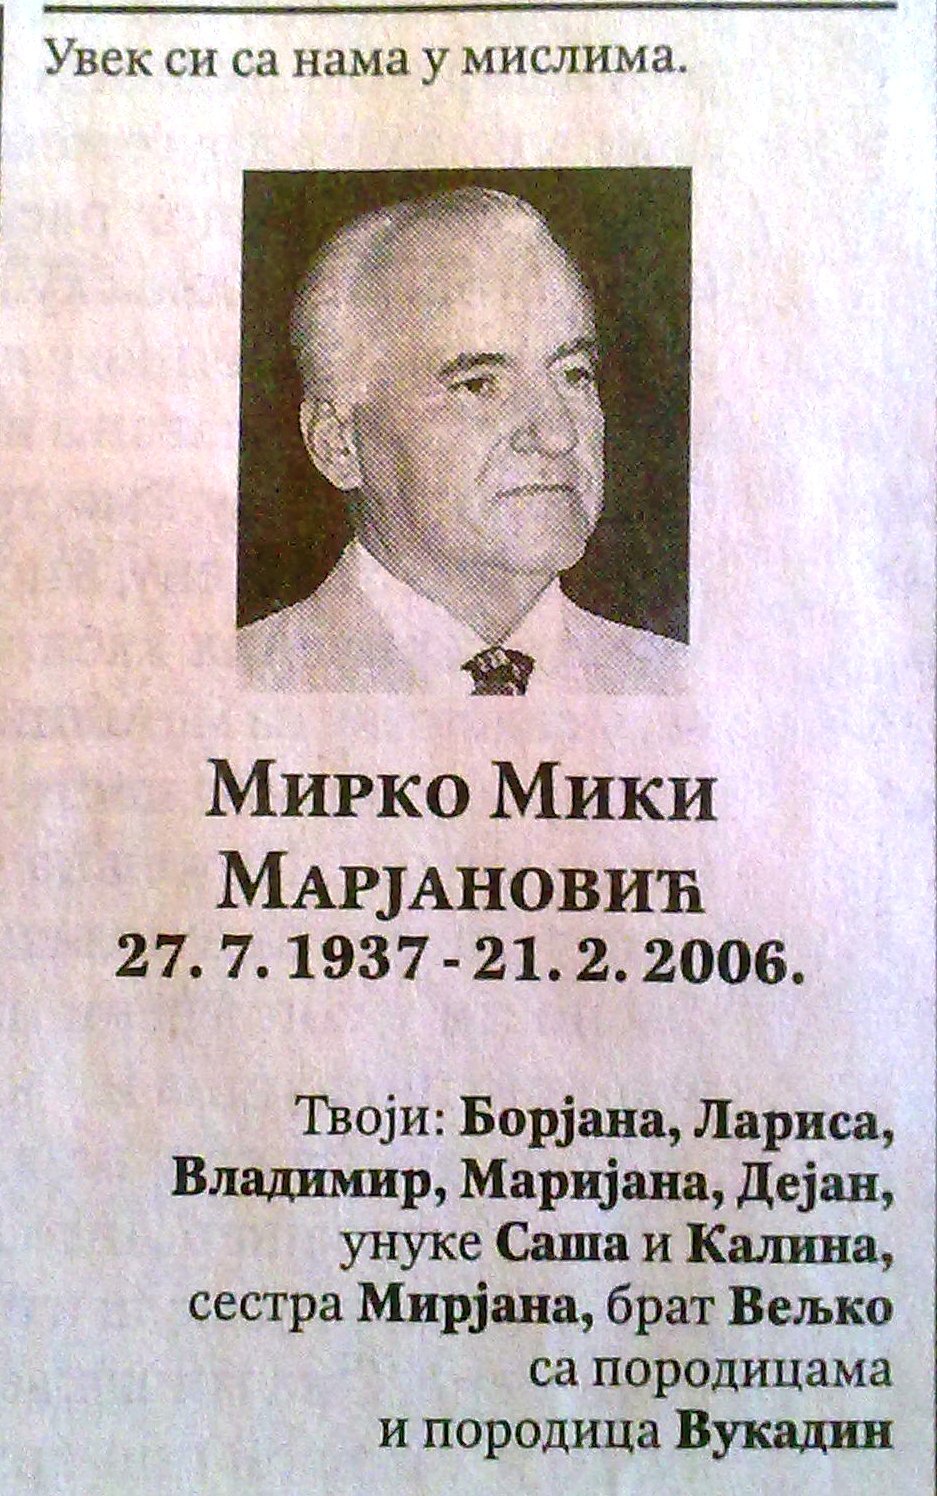 Mirko Marjanovic (1937-2006) - Find a Grave Memorial